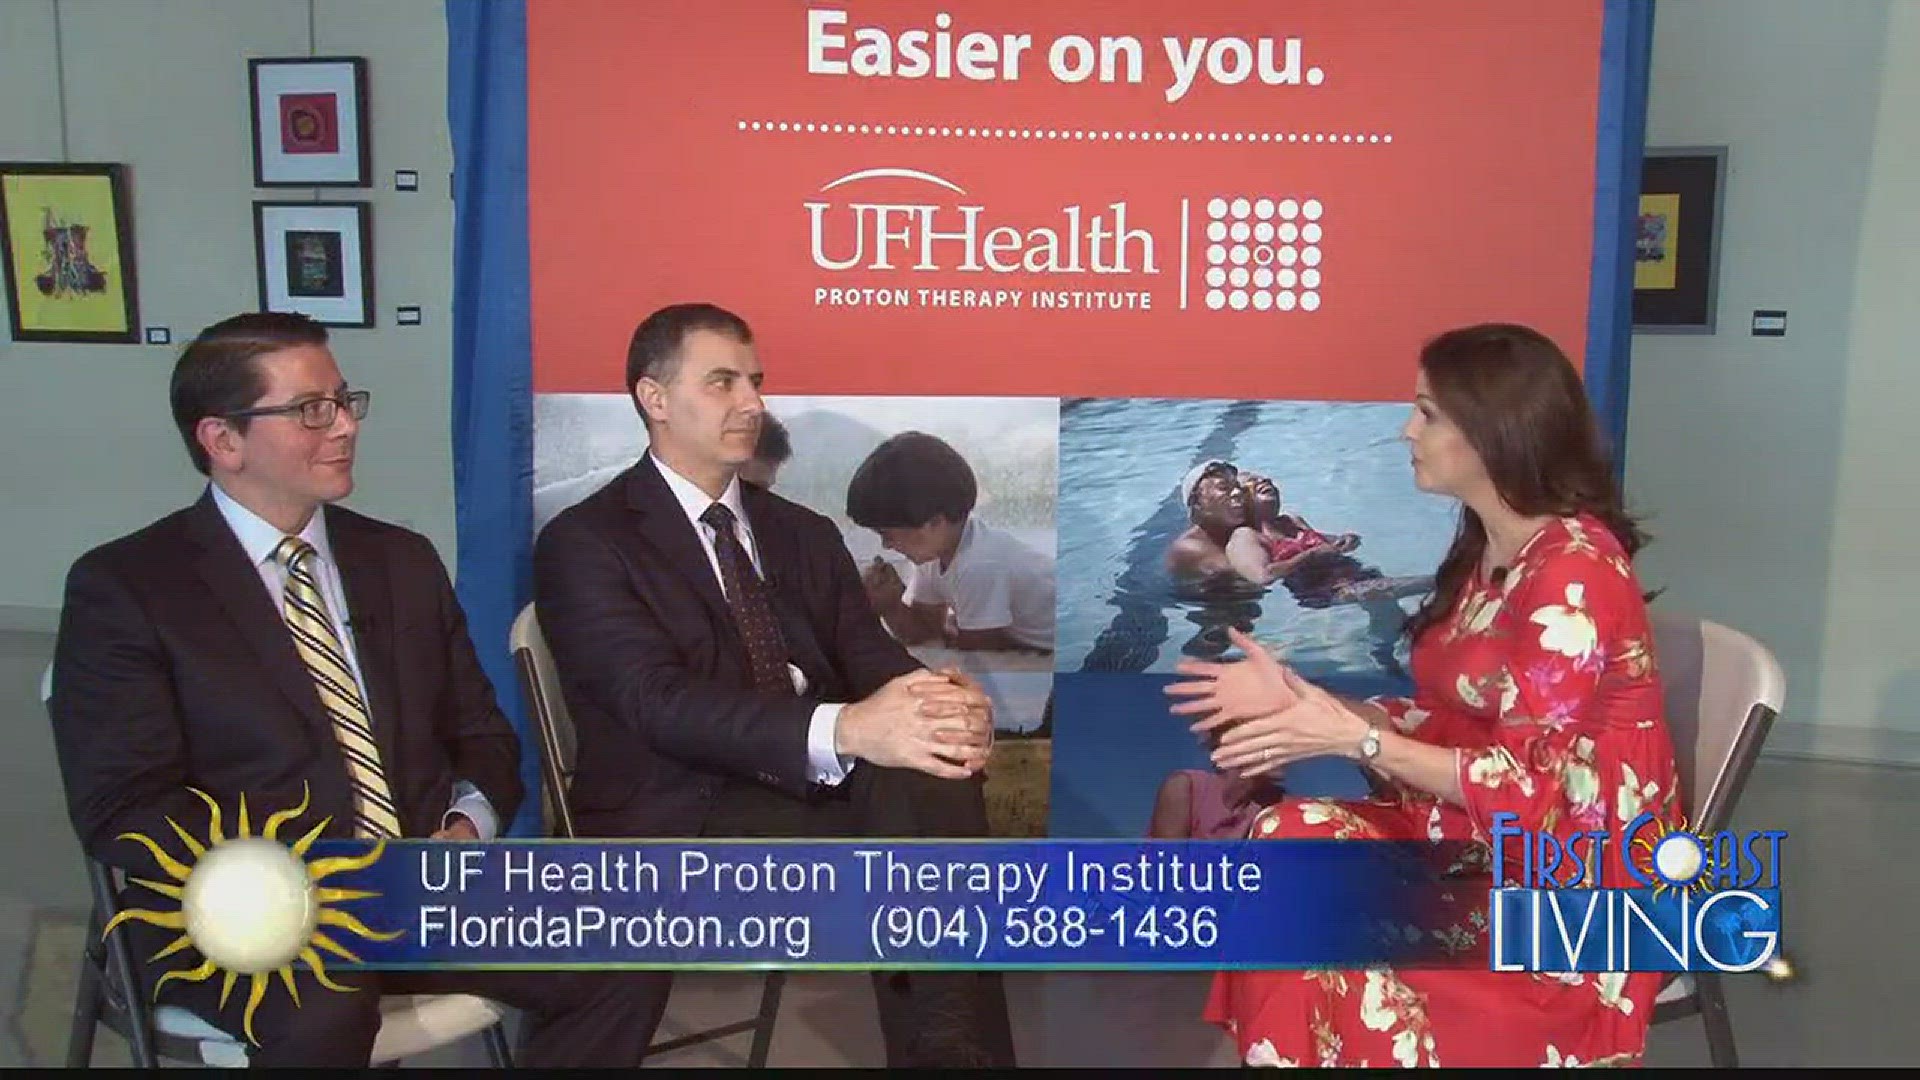 UFHealth Proton Therapy Institute